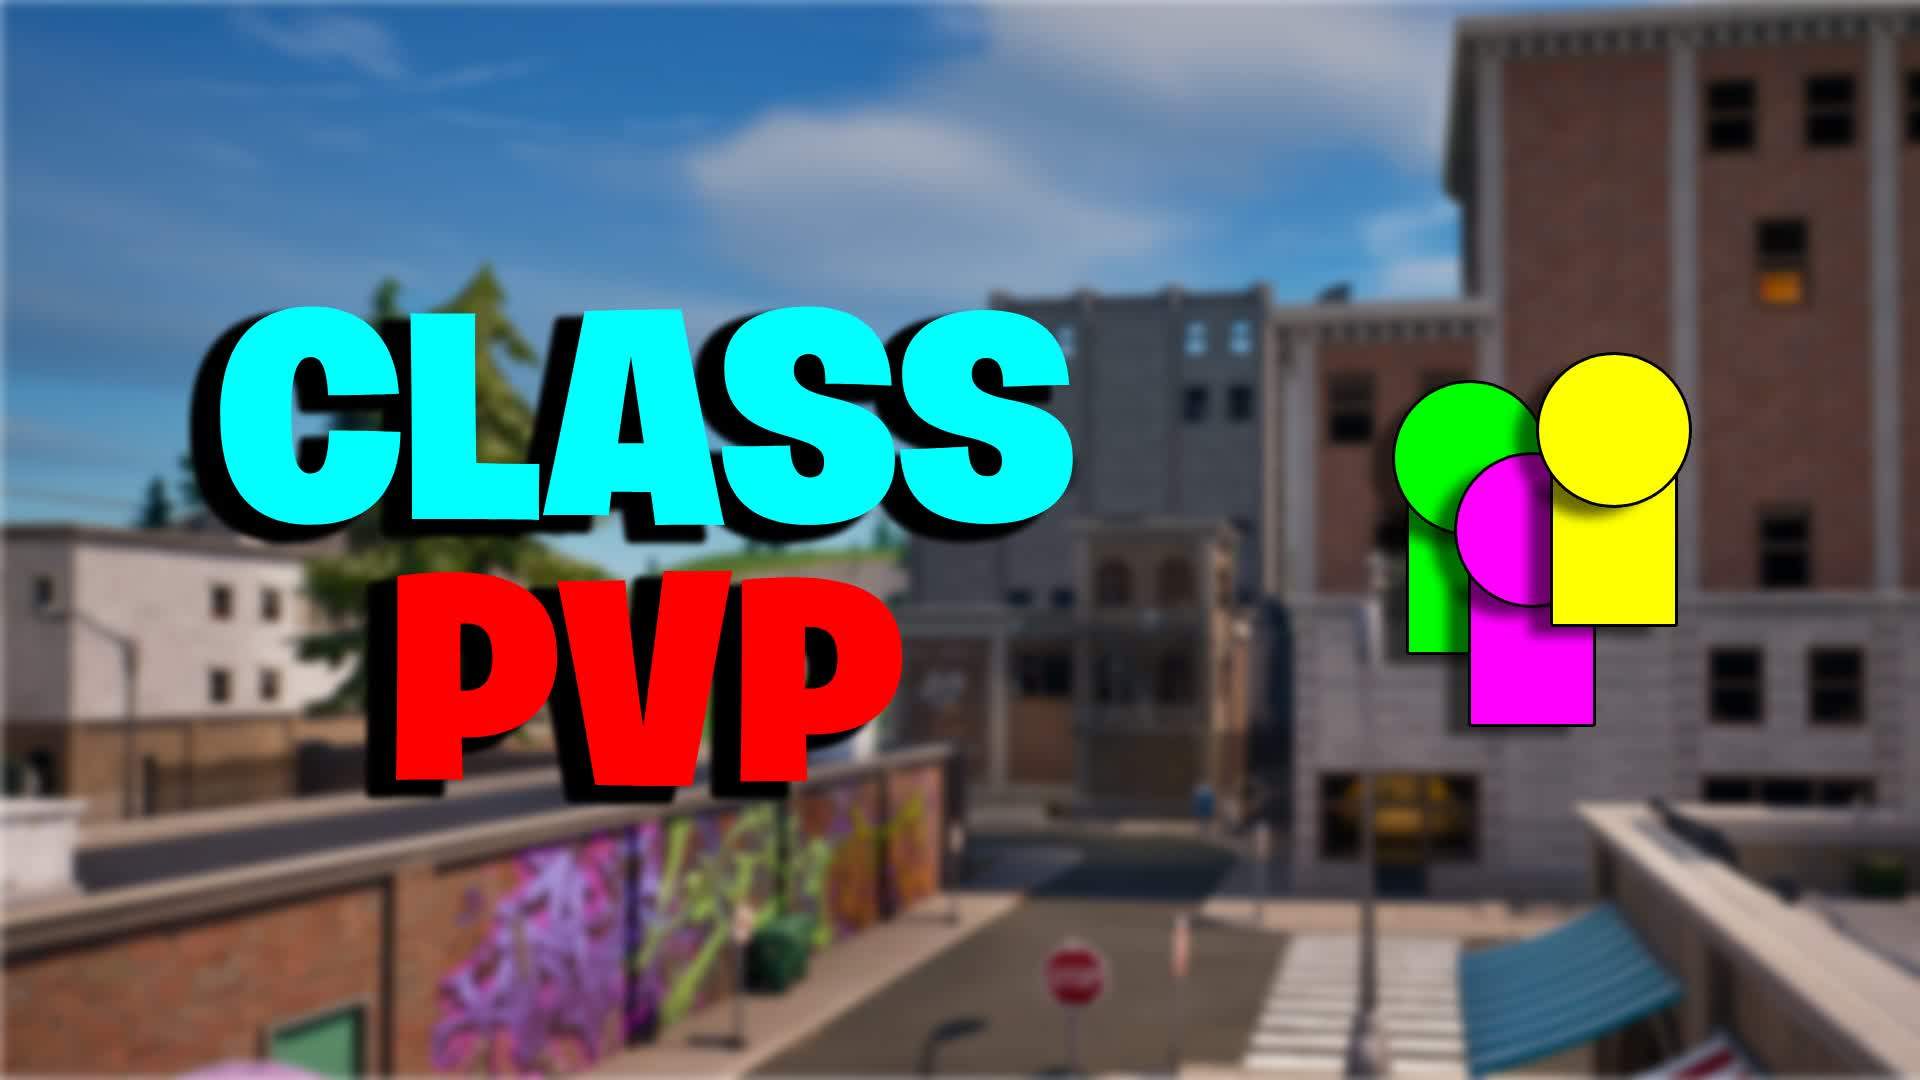 CLASS PVP